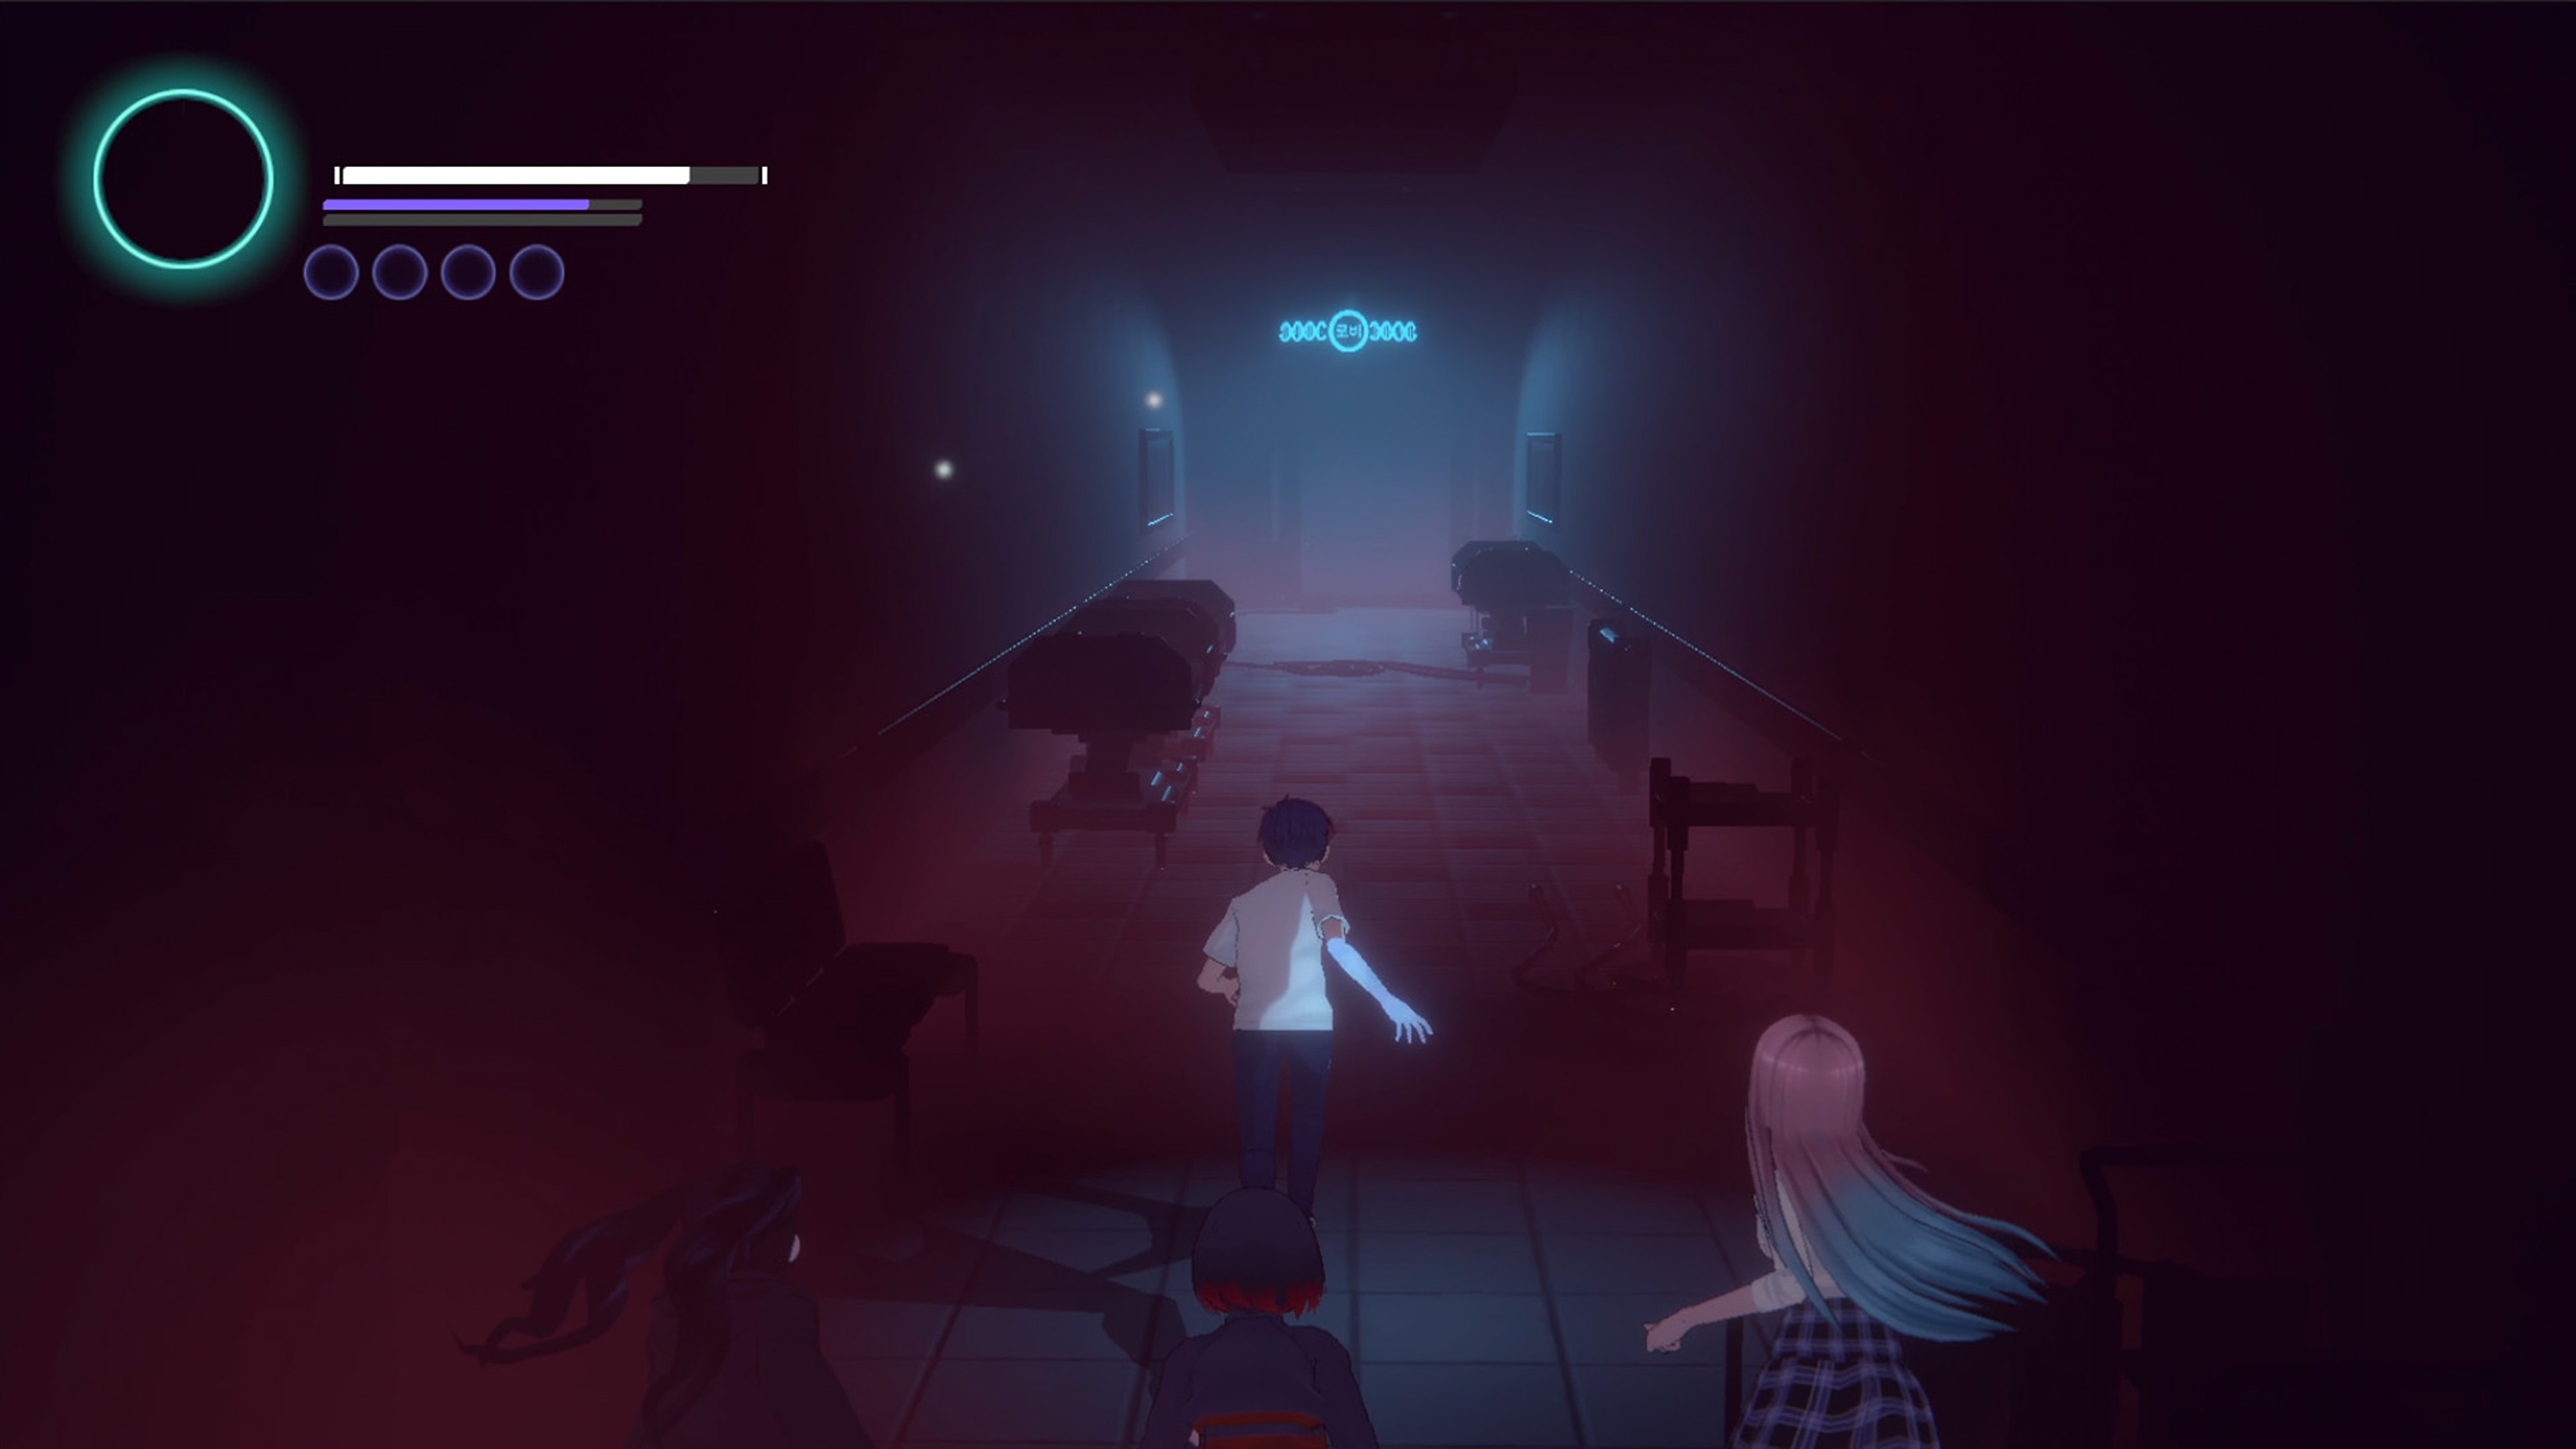 Eternights-Screenshot mit zwei Charakteren im Highschool-Alter, die durch einen schwach beleuchteten Korridor laufen. 